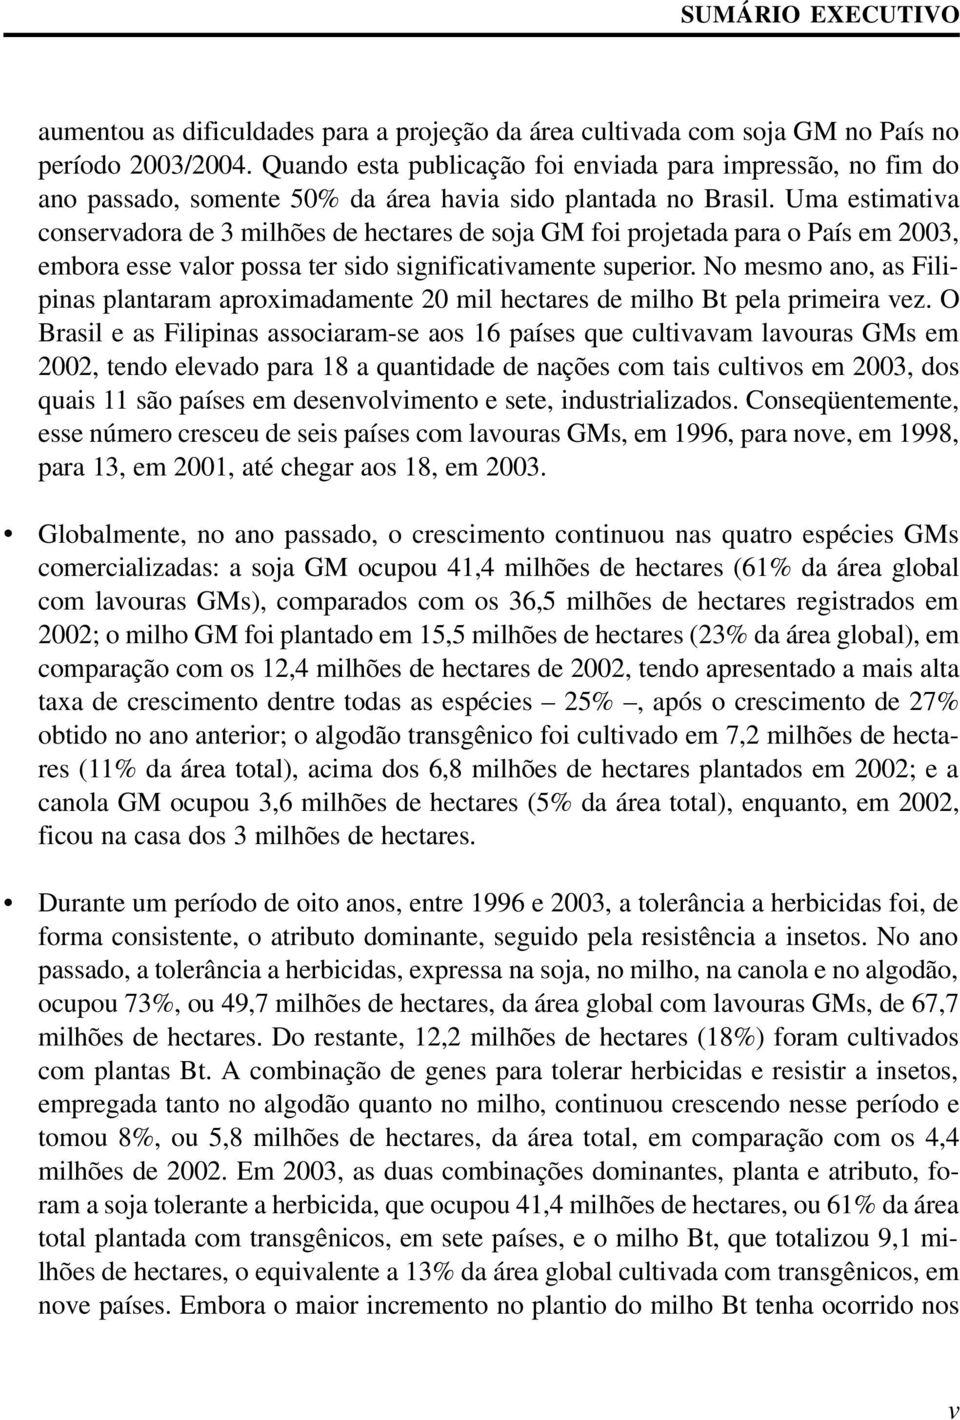 Uma estimativa conservadora de 3 milhões de hectares de soja GM foi projetada para o País em 2003, embora esse valor possa ter sido significativamente superior.